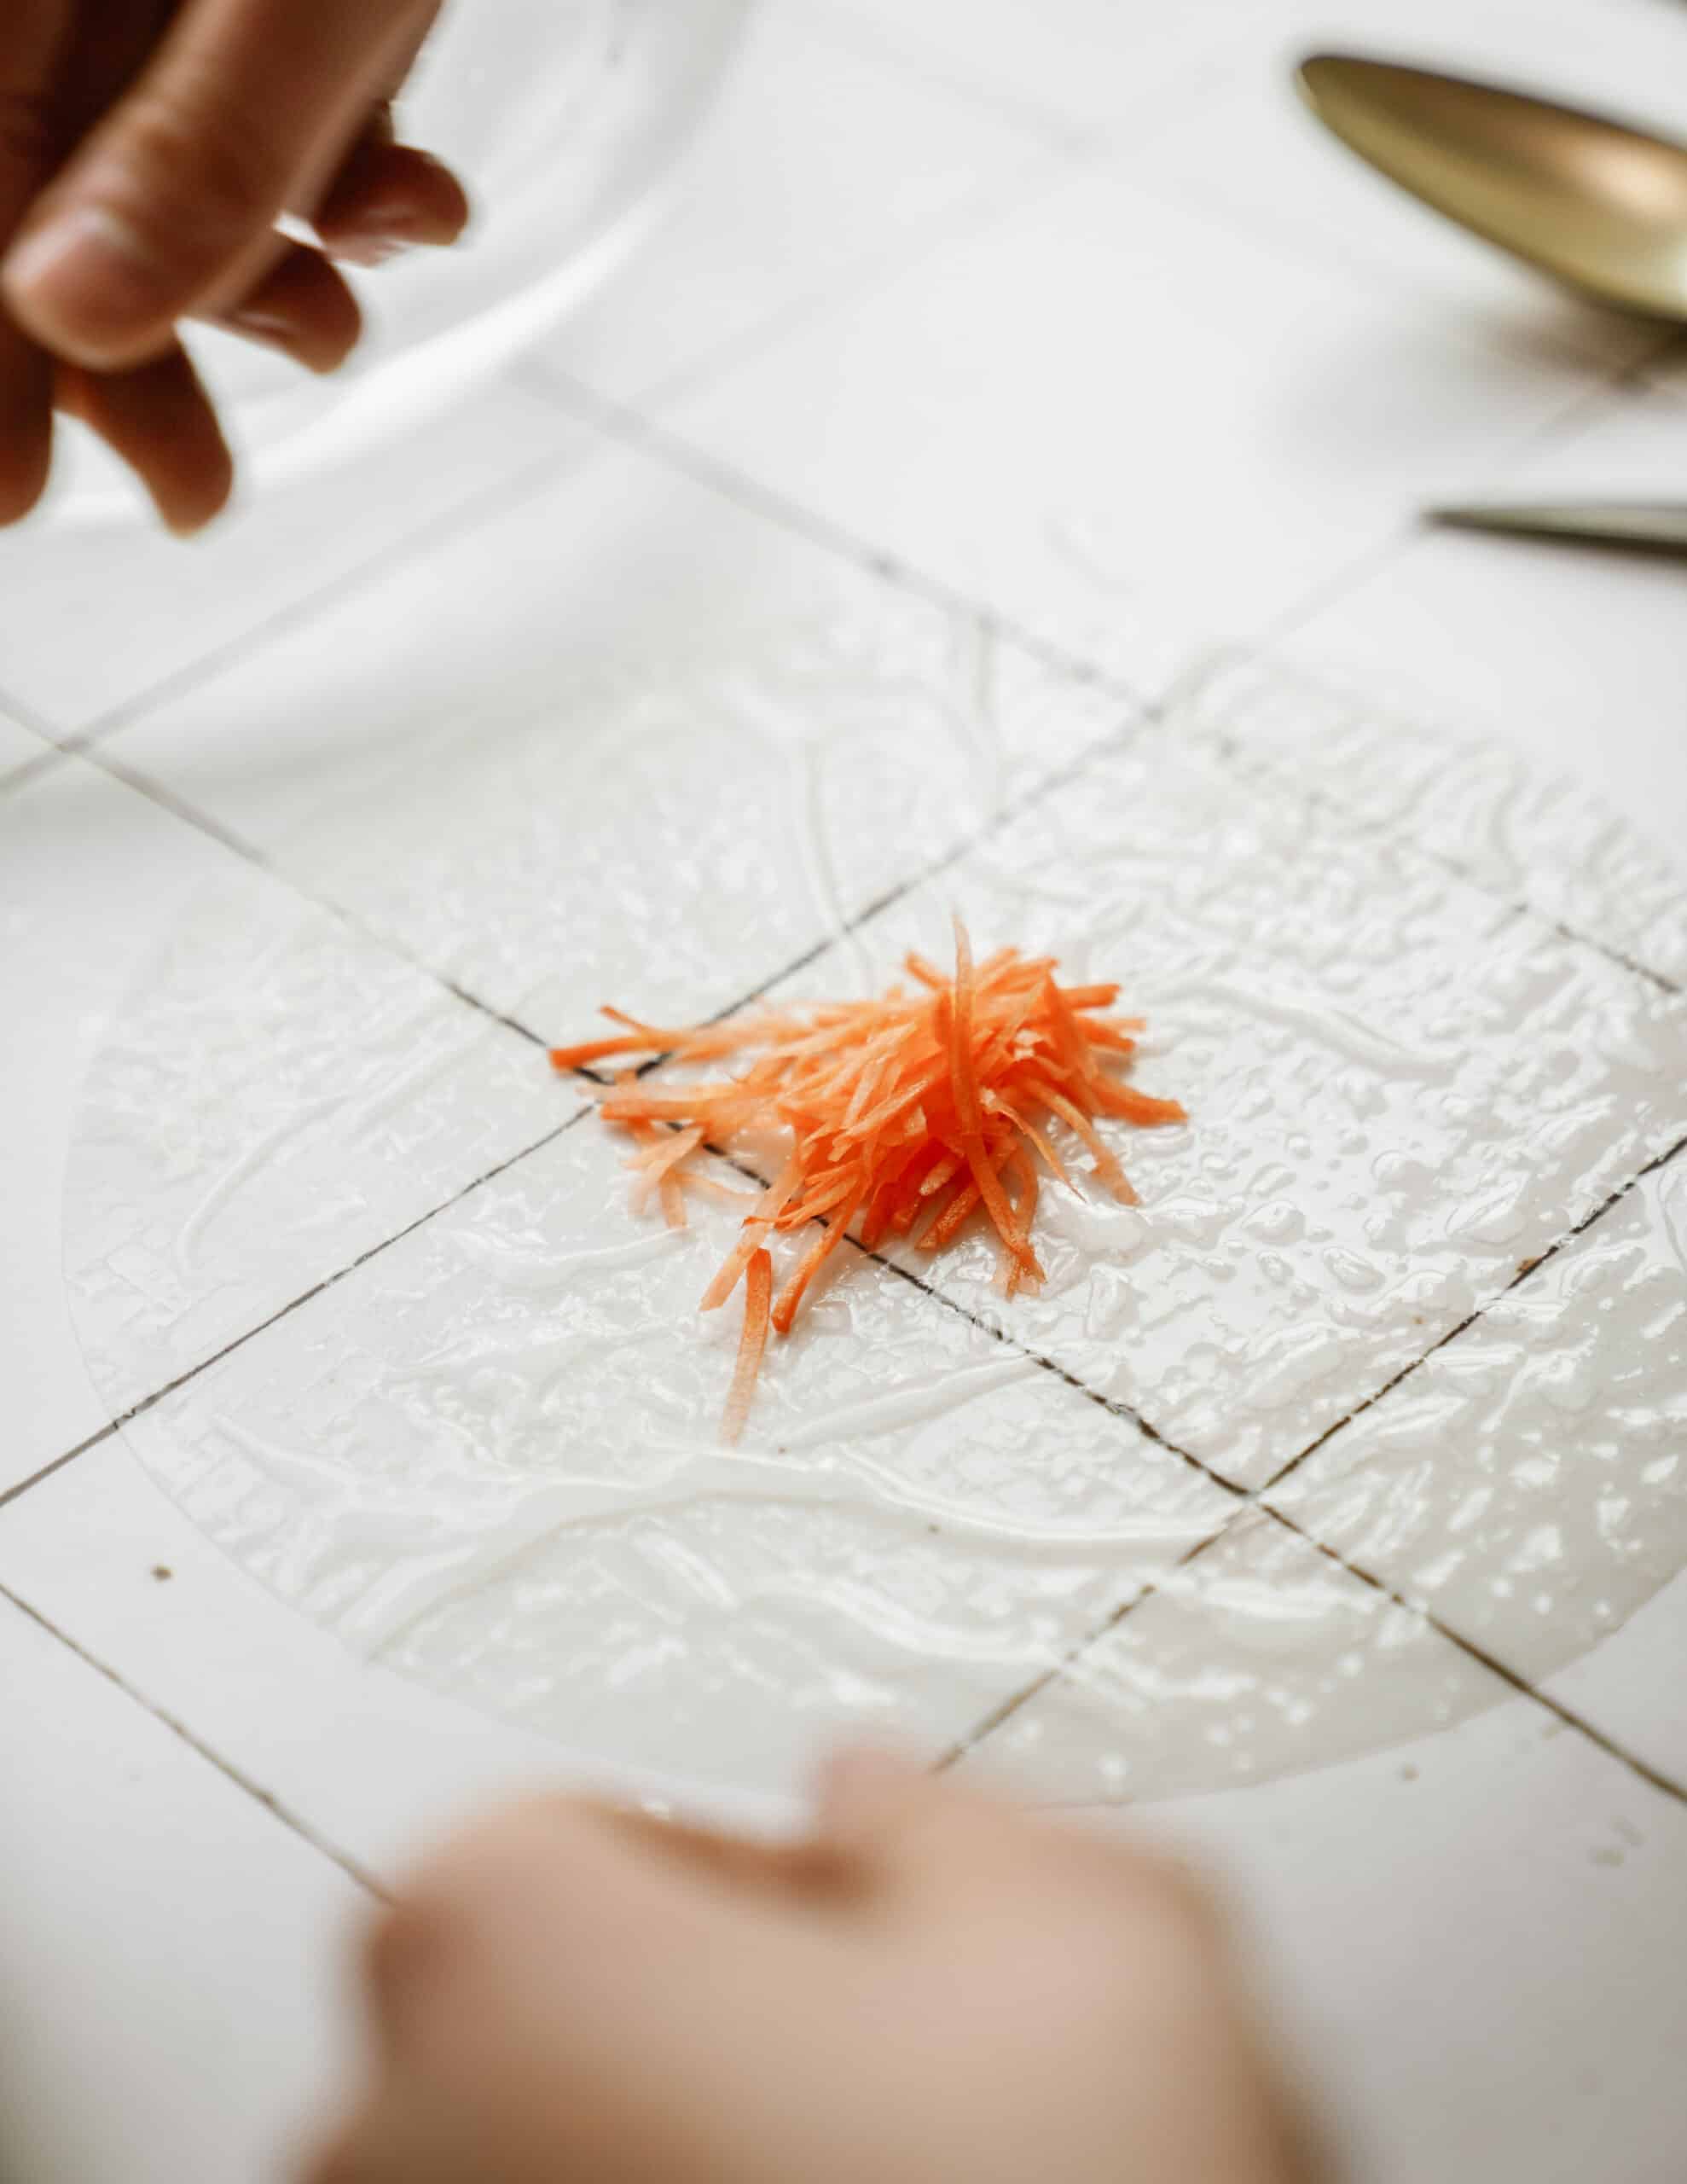 Shredded carrot on wet rice paper